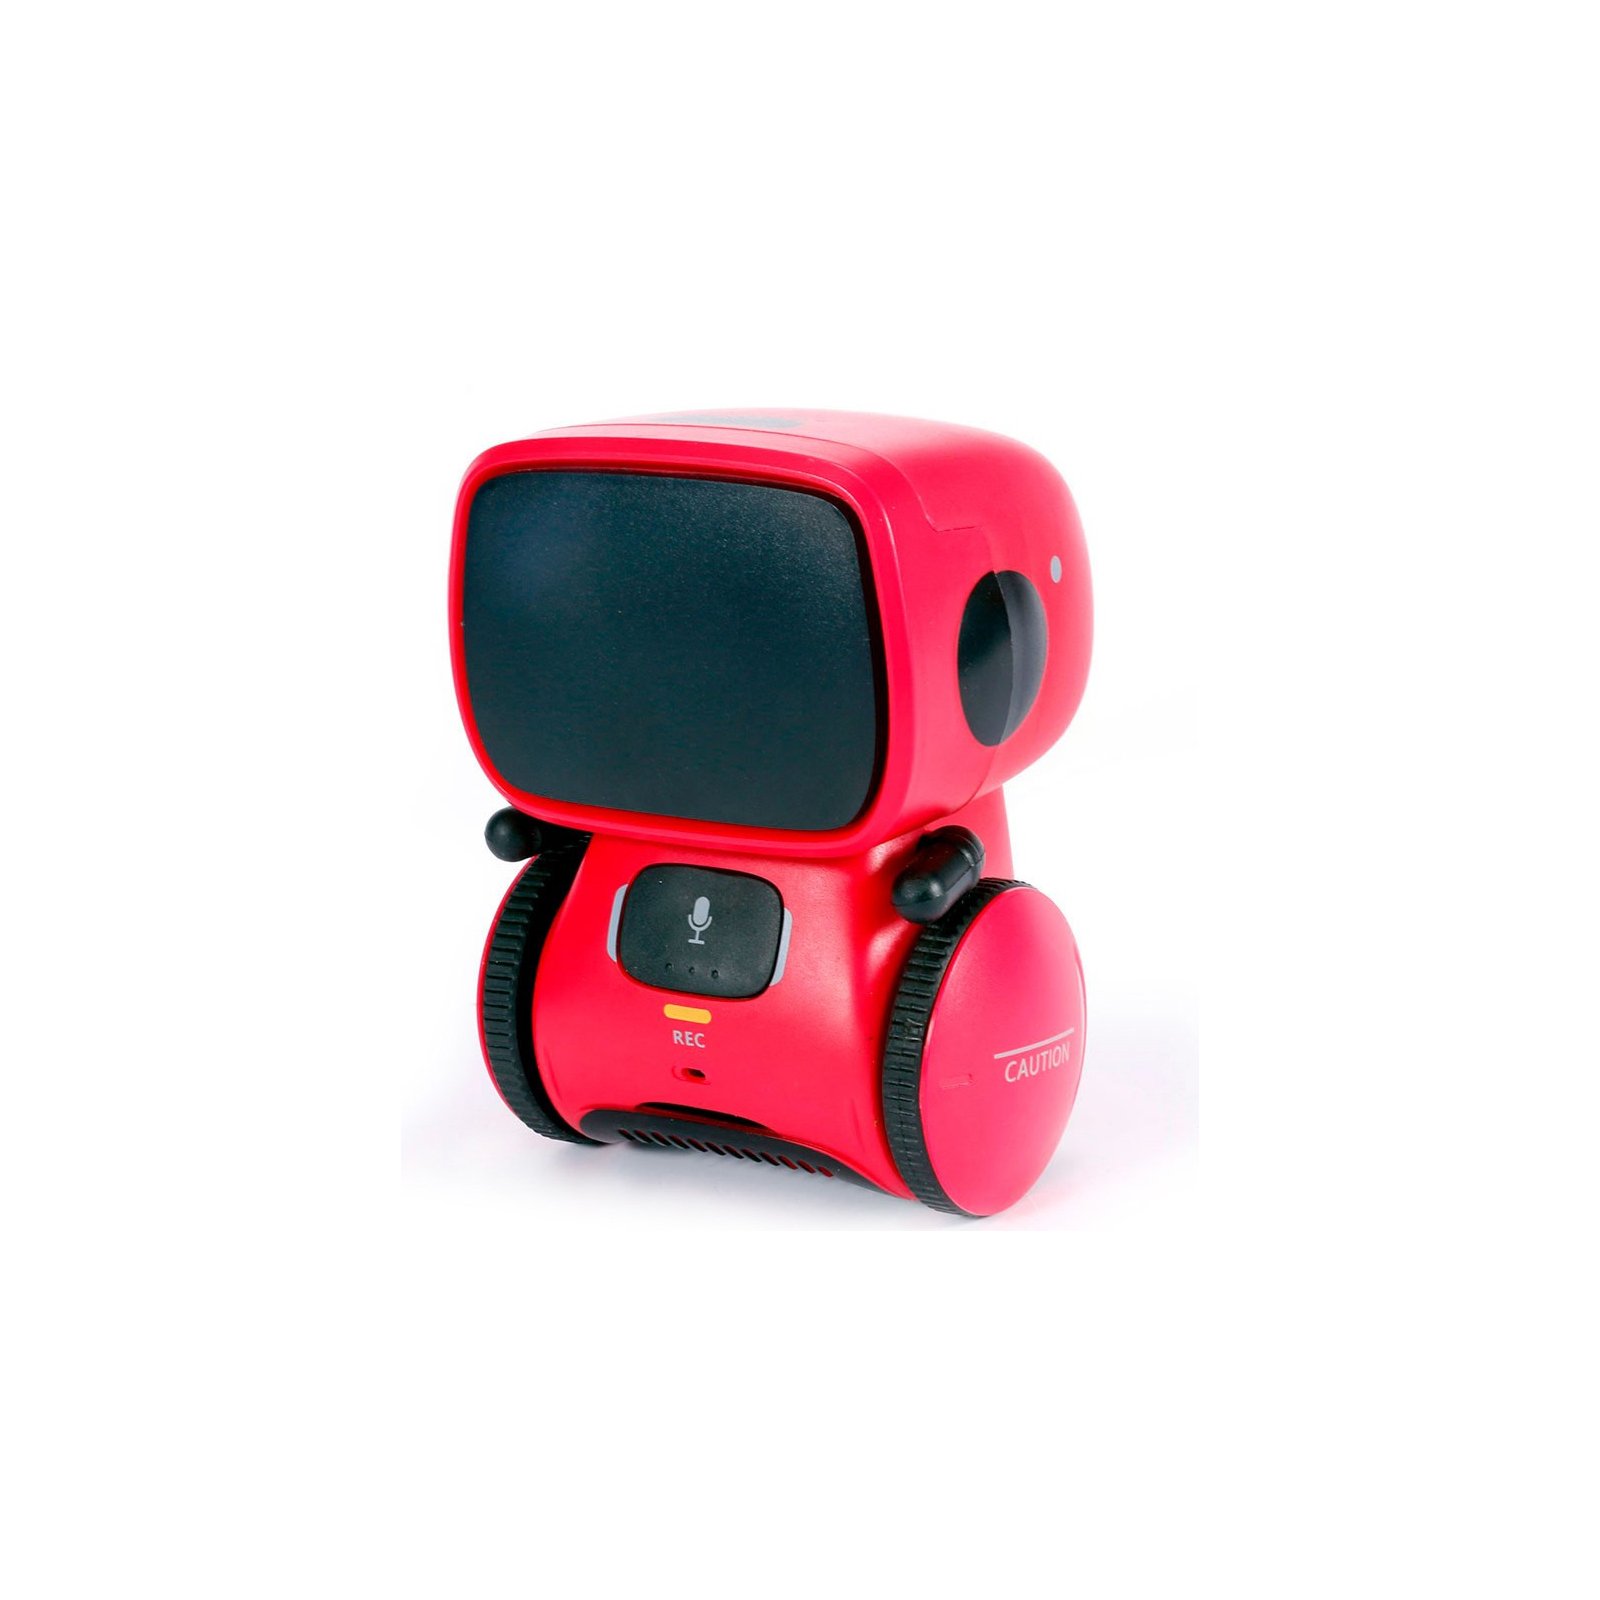 Интерактивная игрушка AT-Robot робот с голосовым управлением красный, рус. (AT001-01) изображение 4